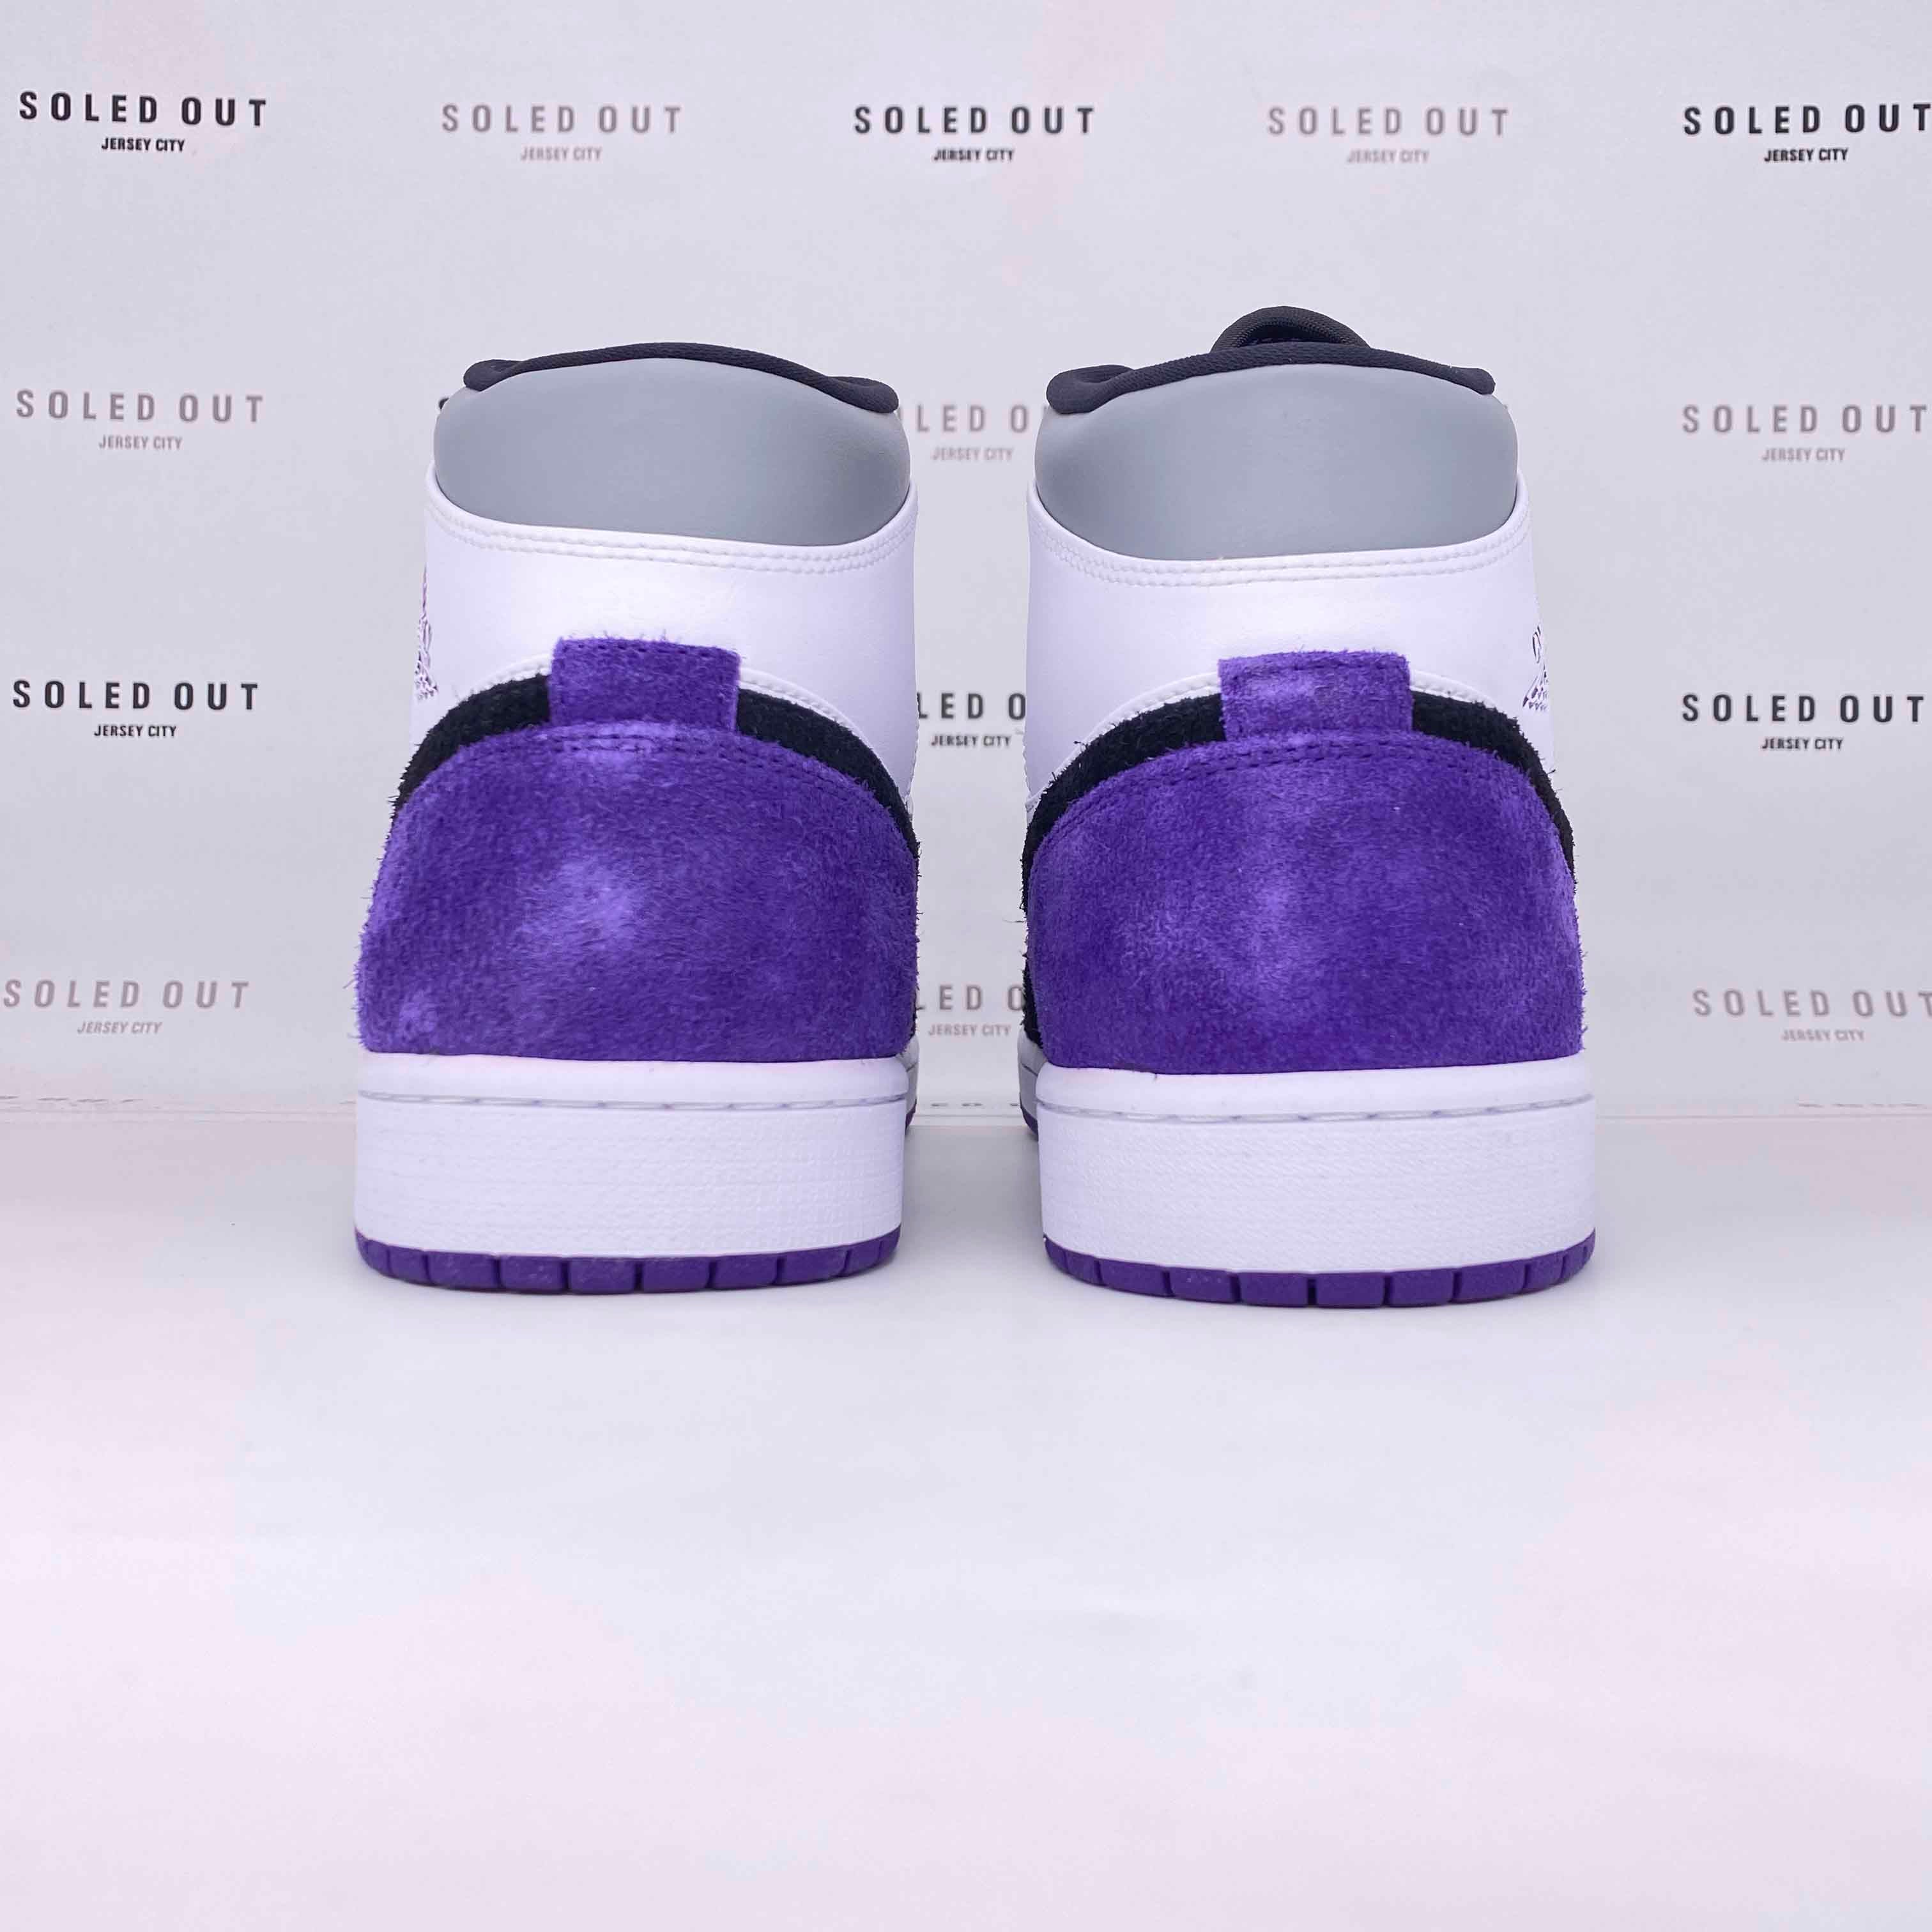 Air Jordan 1 Mid "Purple" 2020 New Size 13